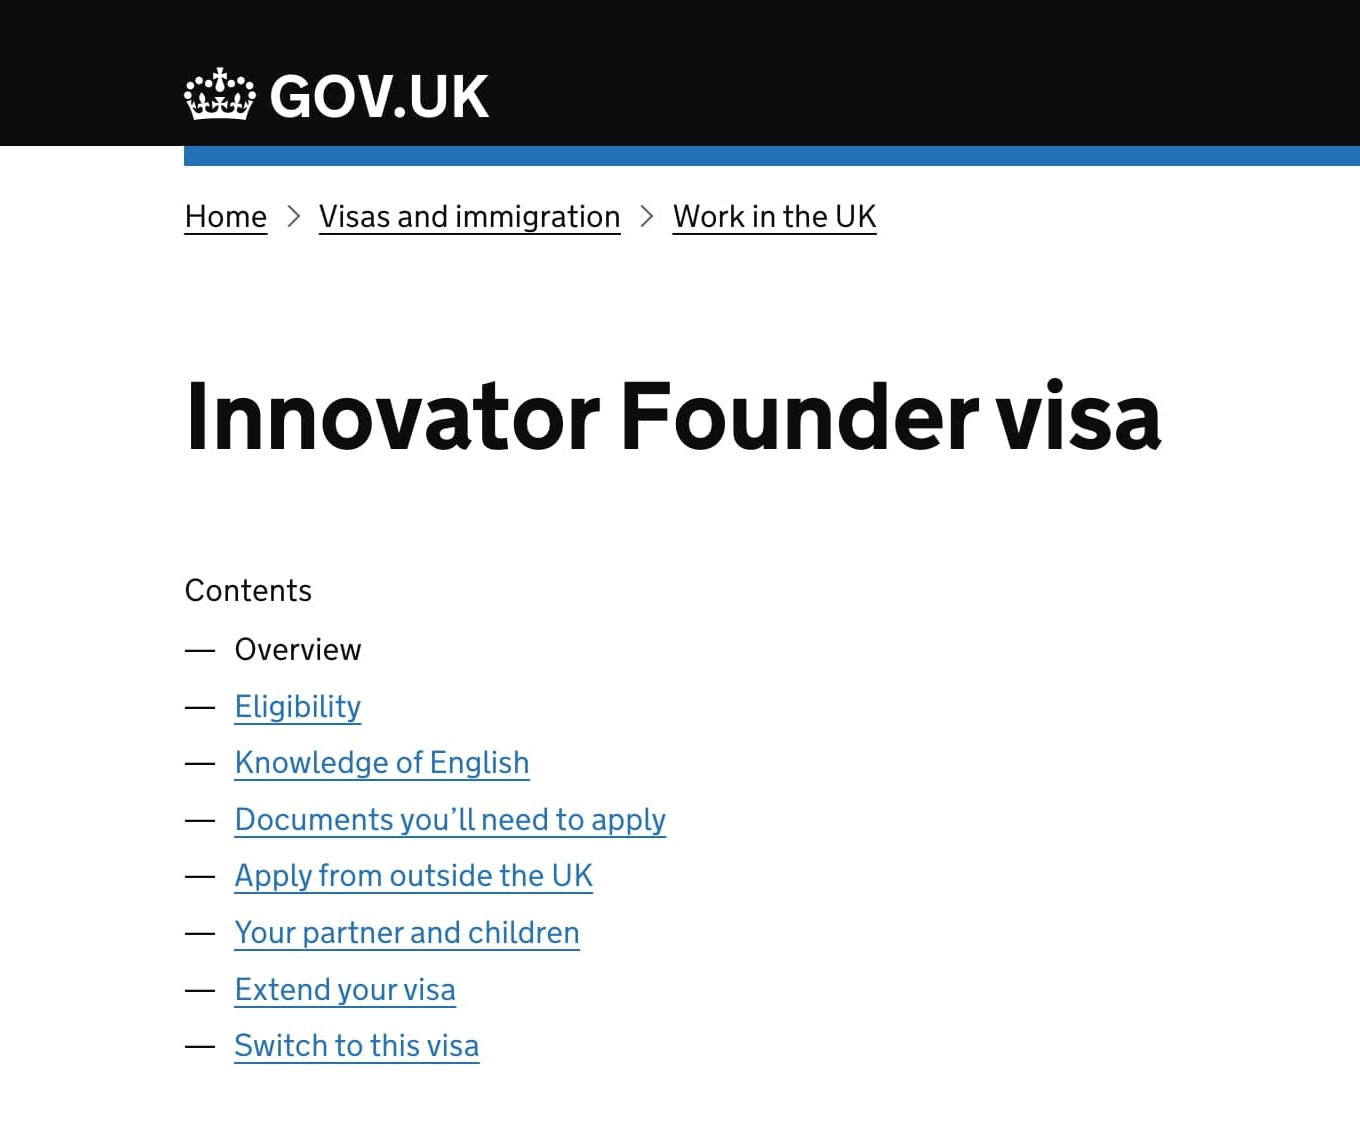 Список требований к Innovator Founder Visa